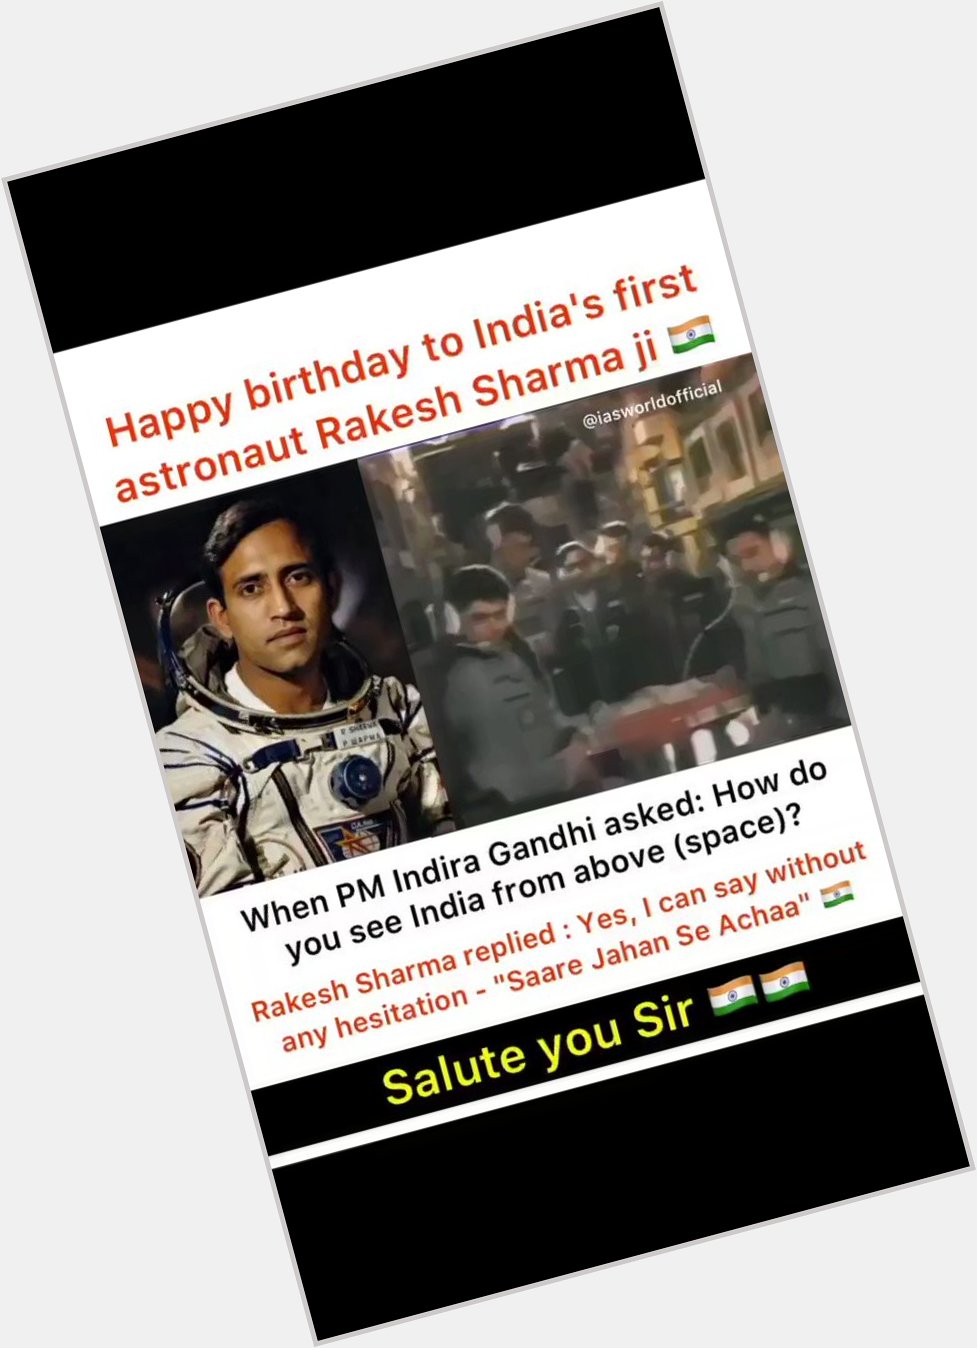 Happy birthday to Rakesh Sharma ji 